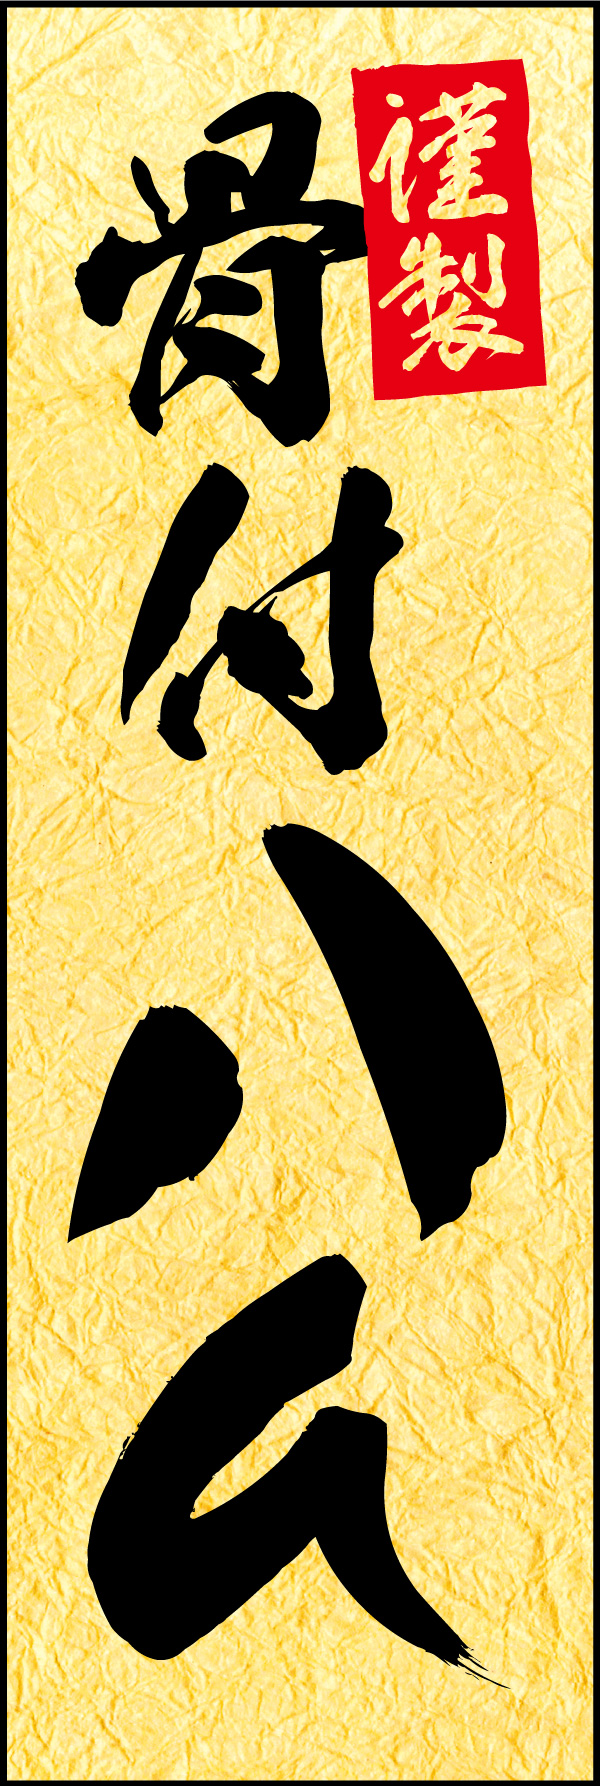 骨付きハム 01 「骨付きハム」ののぼりです。お中元・お歳暮や、贈答品に相応しい品格のある商品をイメージしたデザインにしました。(Y.M)